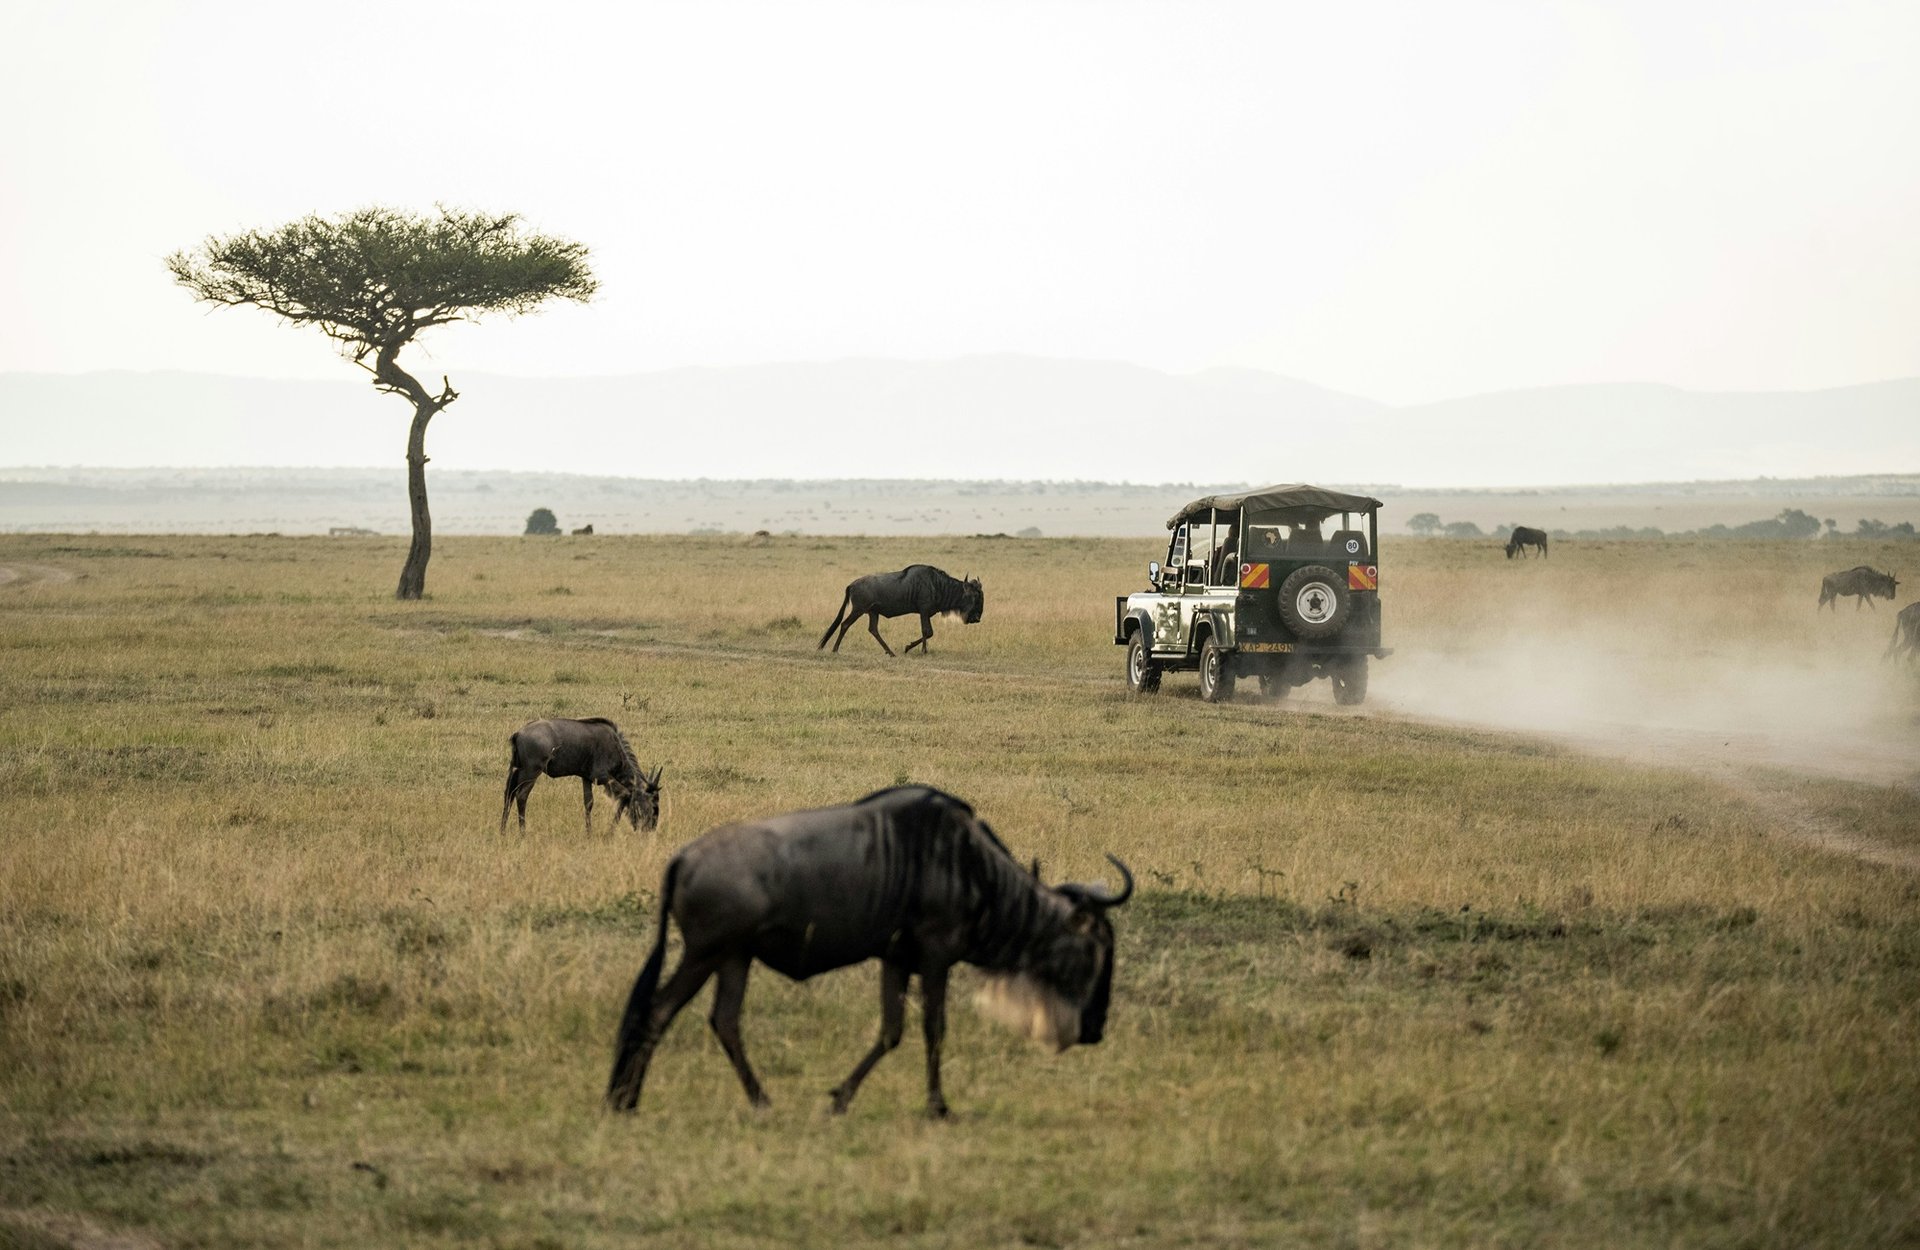 Safari Kenya, Masai Mara